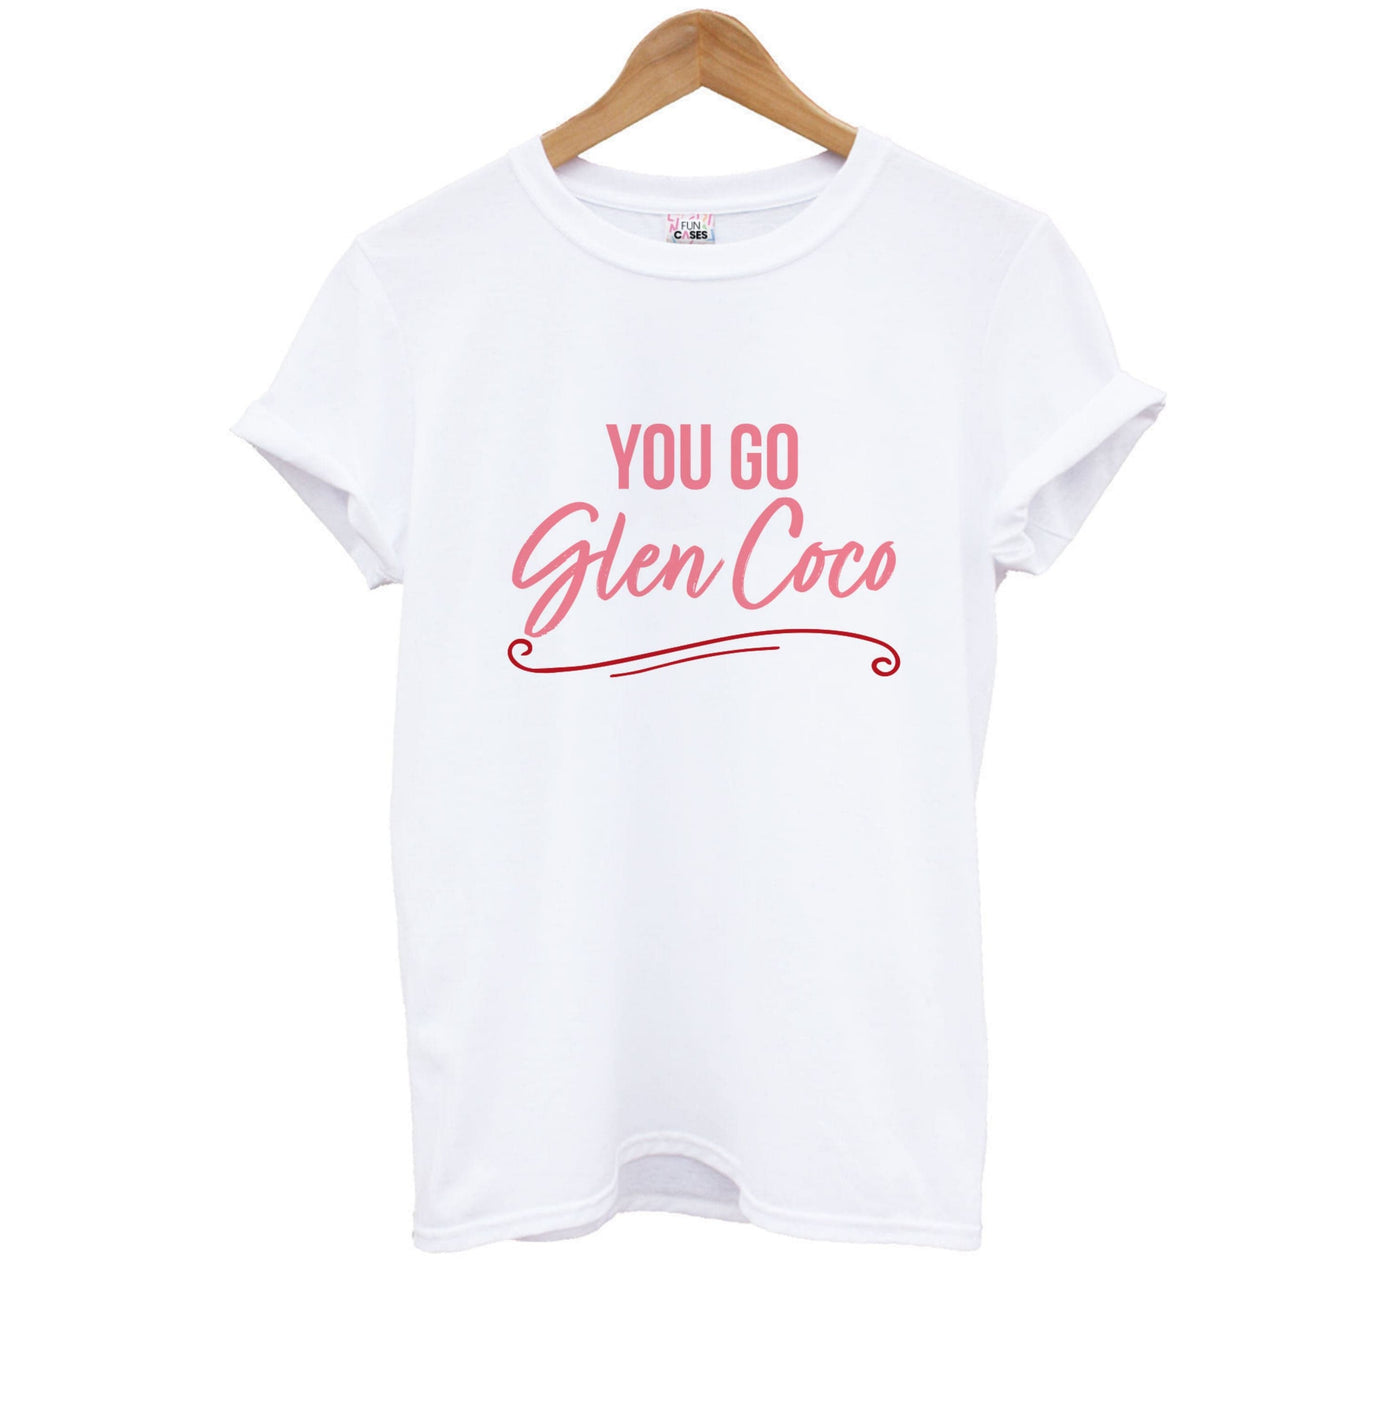 You Go Glen Coco - Mean Girls Kids T-Shirt